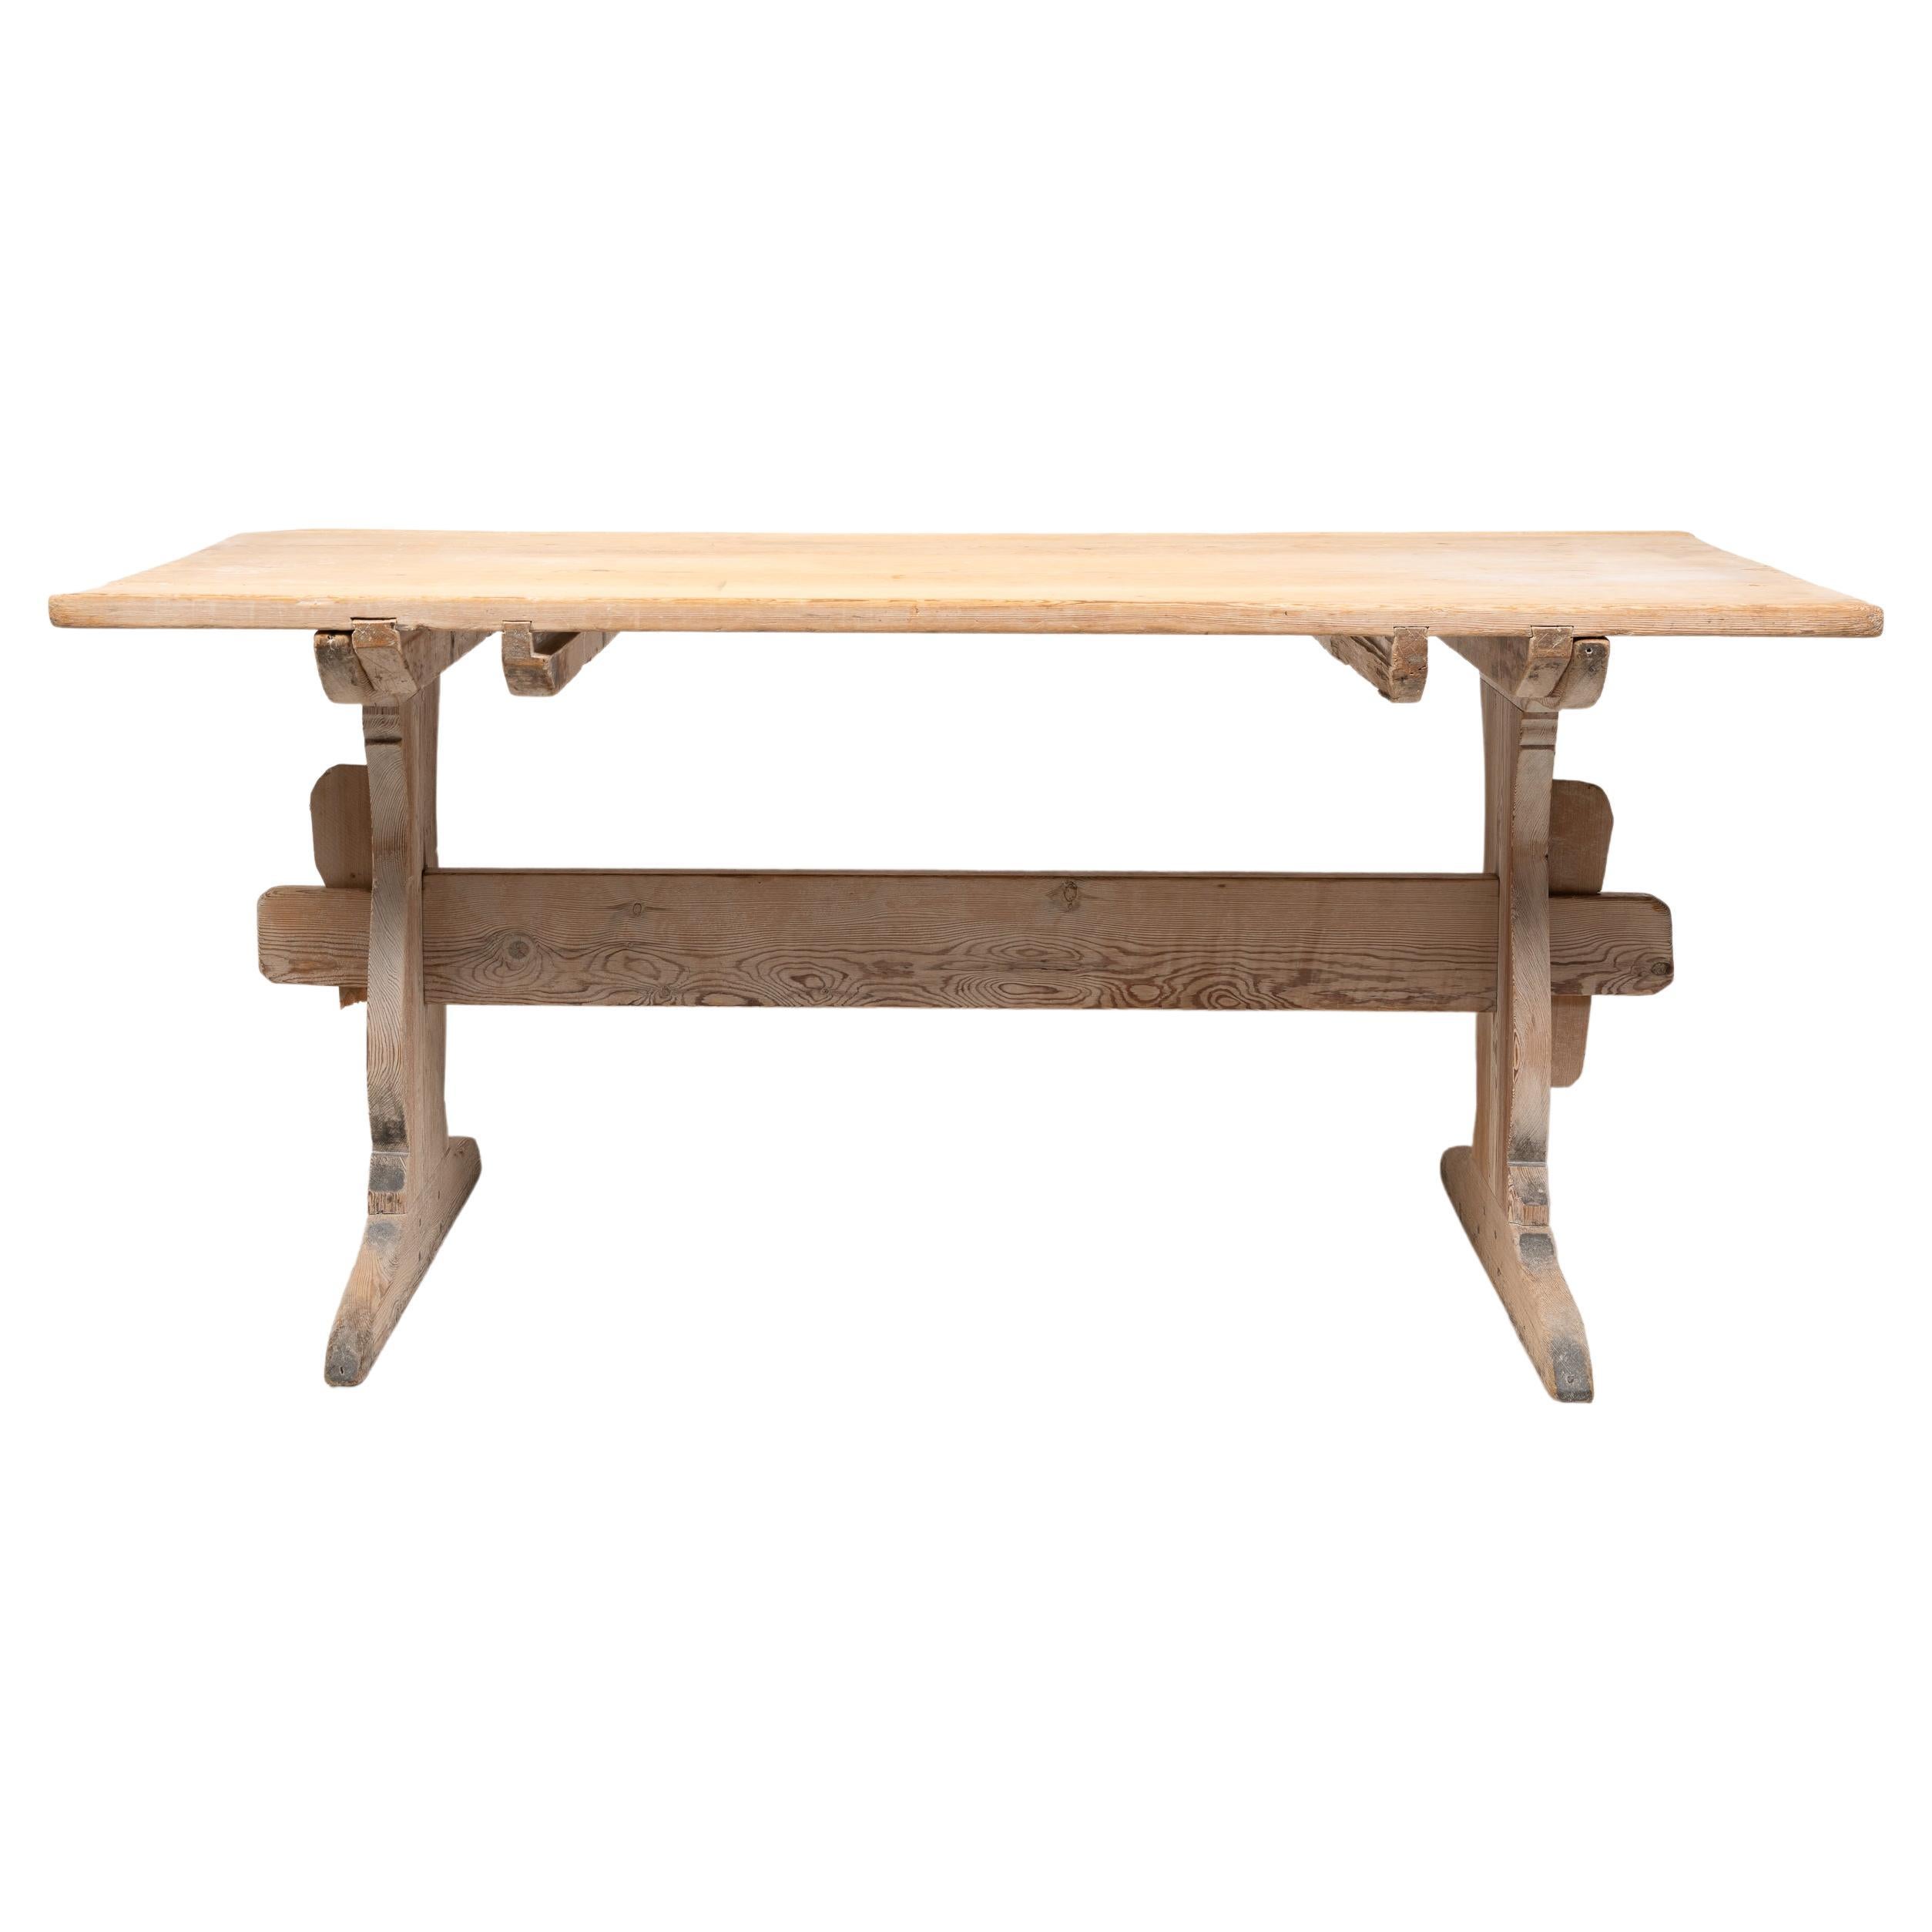 Table de salle à manger de maison de campagne suédoise en pin. Cette table, appelée table à tréteaux, est un authentique meuble de campagne du nord de la Suède, issu de l'art populaire. Fabriquée entièrement à la main, la table date de la fin des